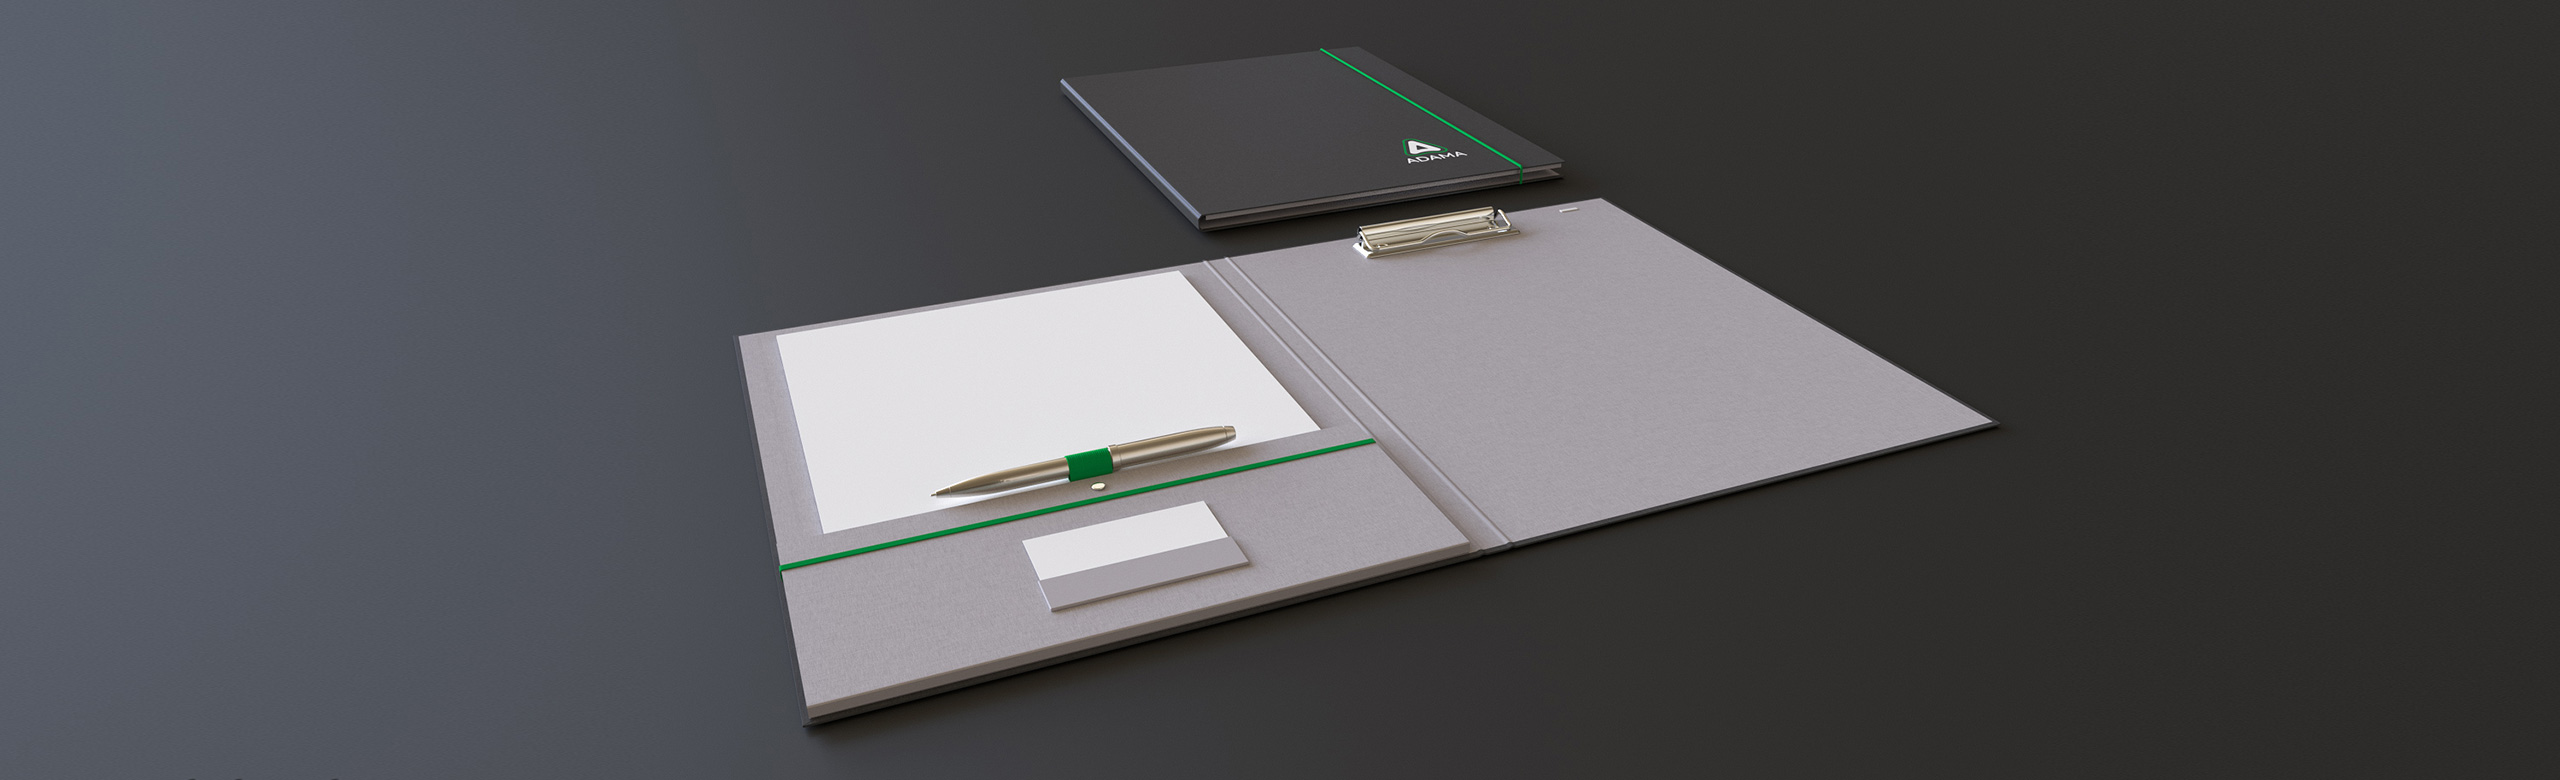 Premium folders and binders